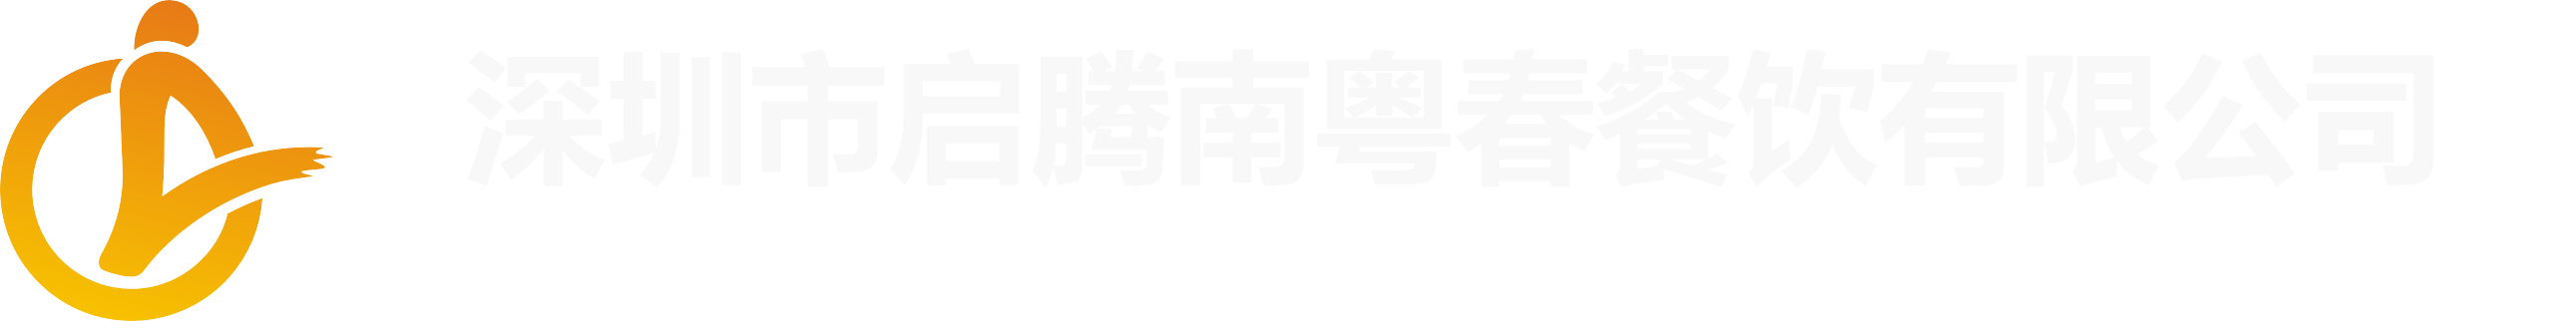 江西眾和化工有限公司logo